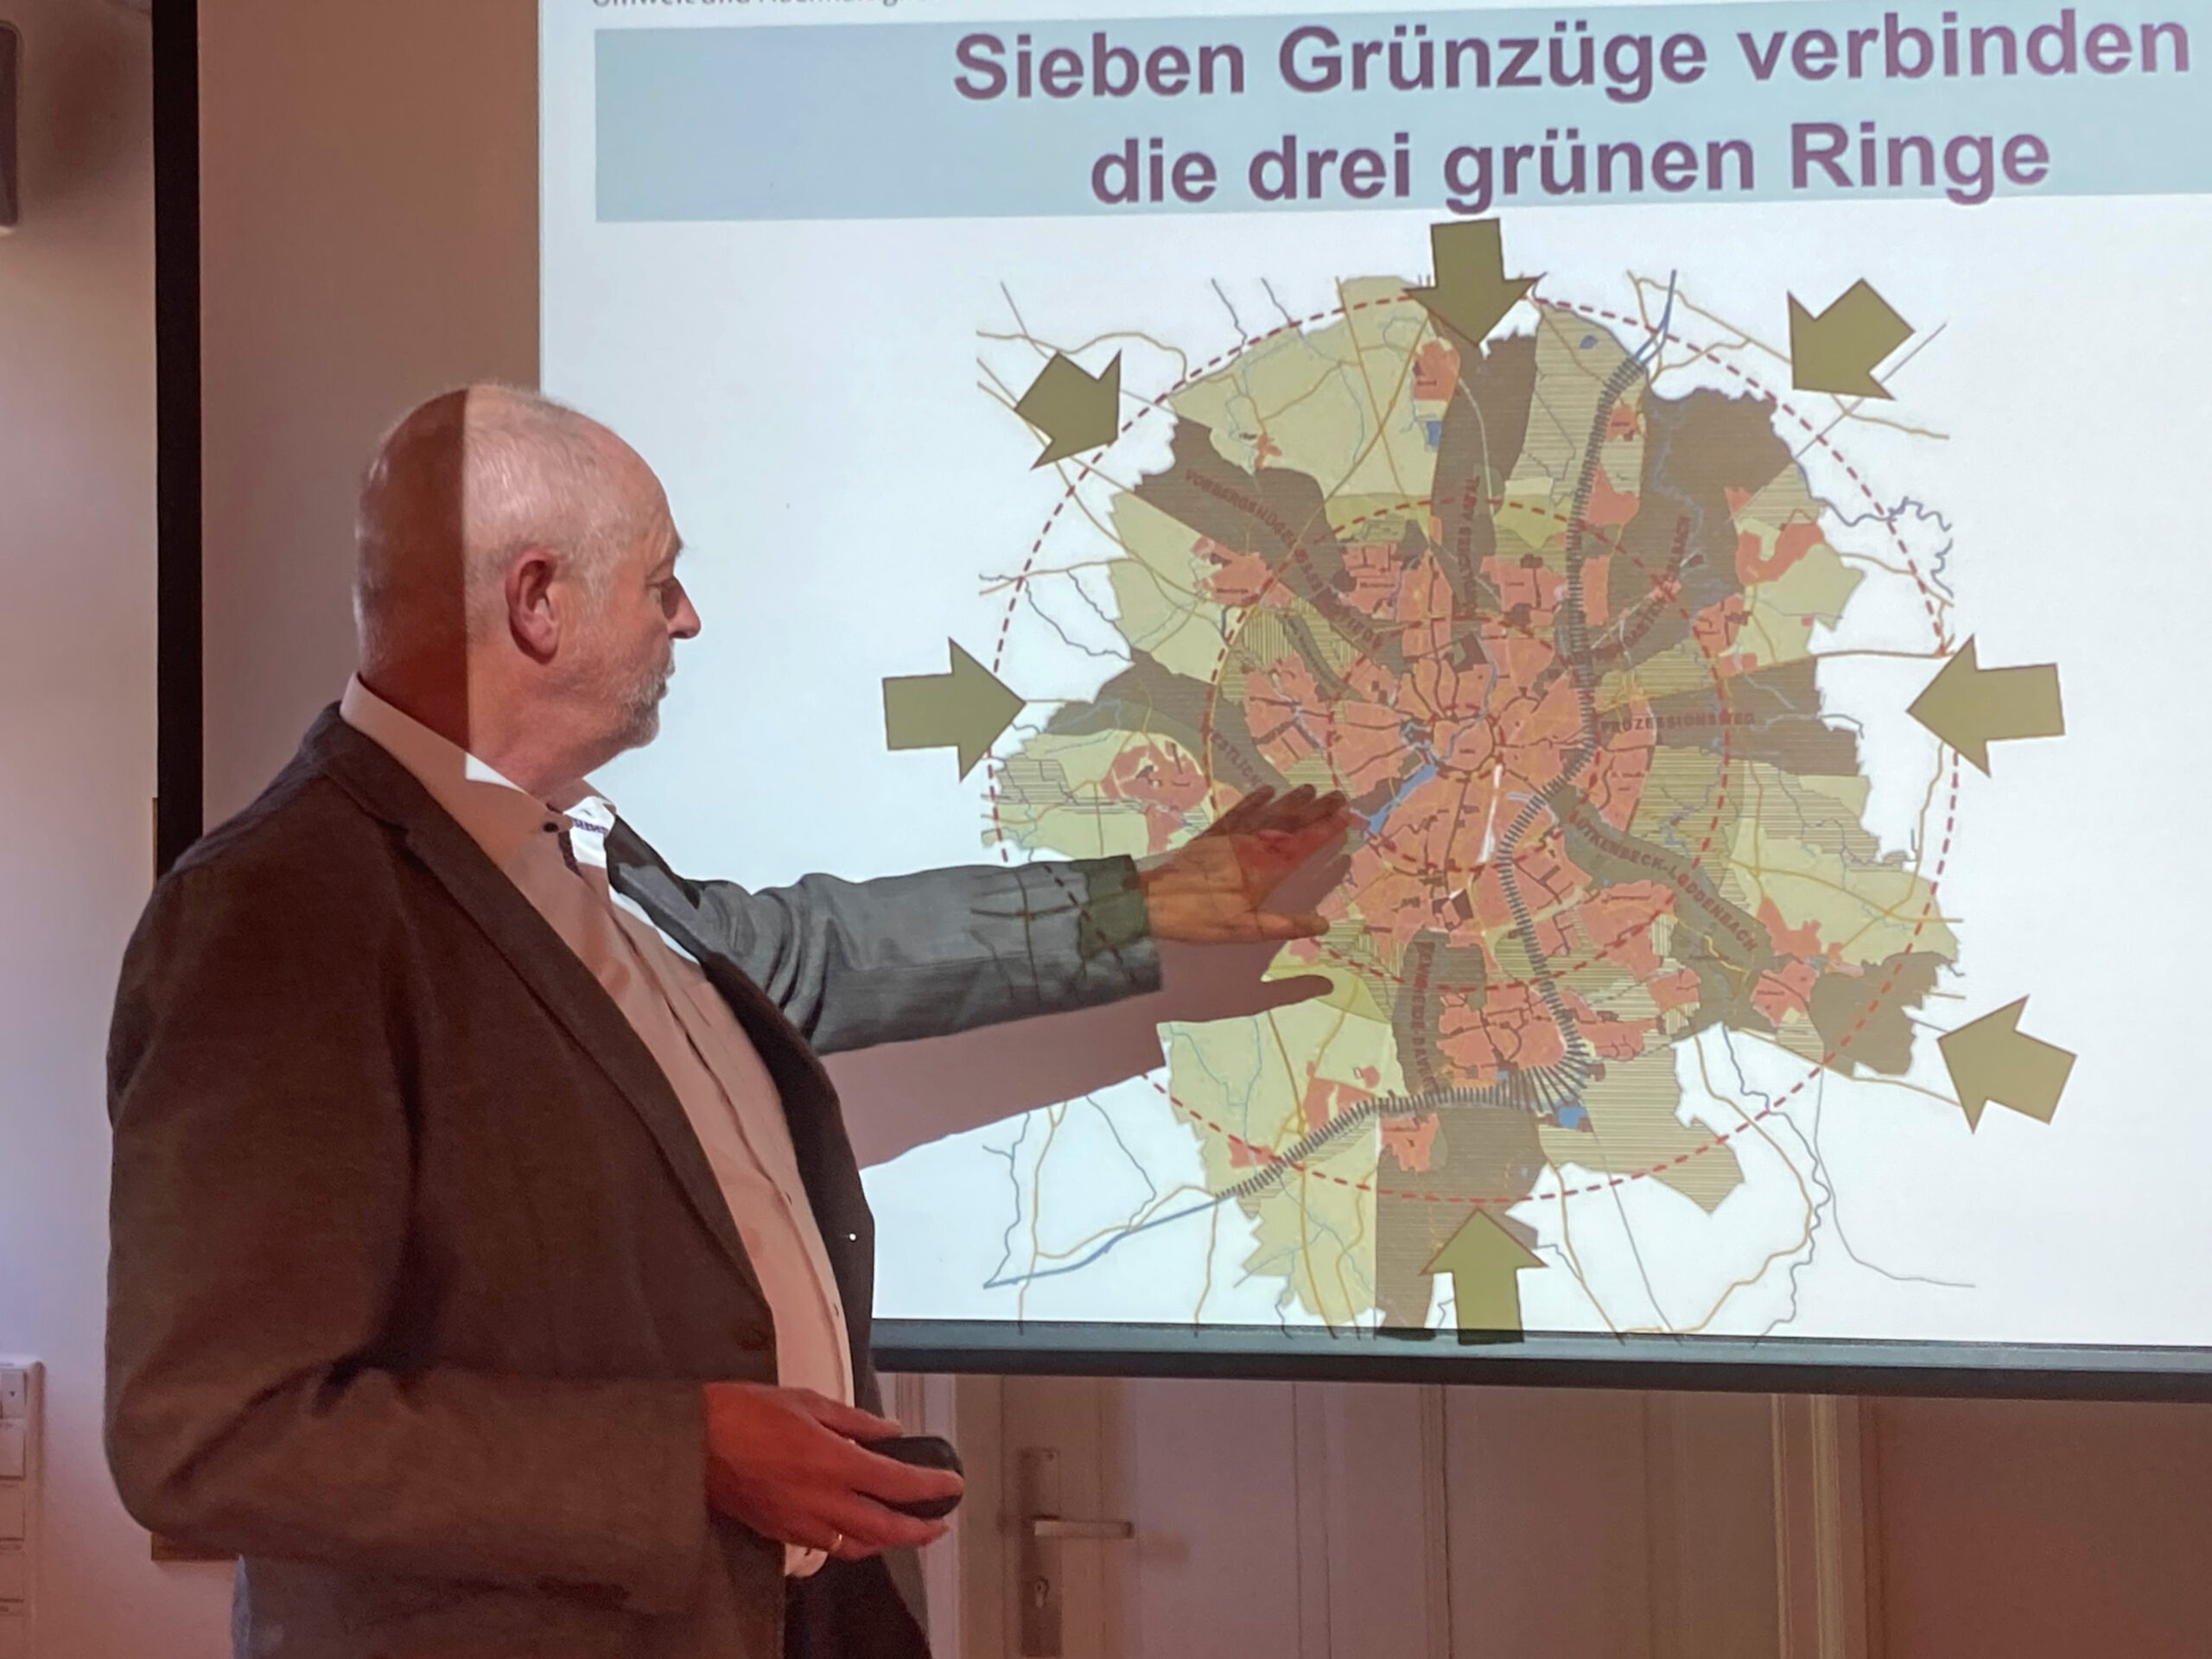 Münster als "lebensweteste Stadt der Welt" - Vortrag von Heiner Bruns, ehemaliger Leiter des Amts für Grünflächen, Umwelt und Nachhaltigkeit der Stadt Münster